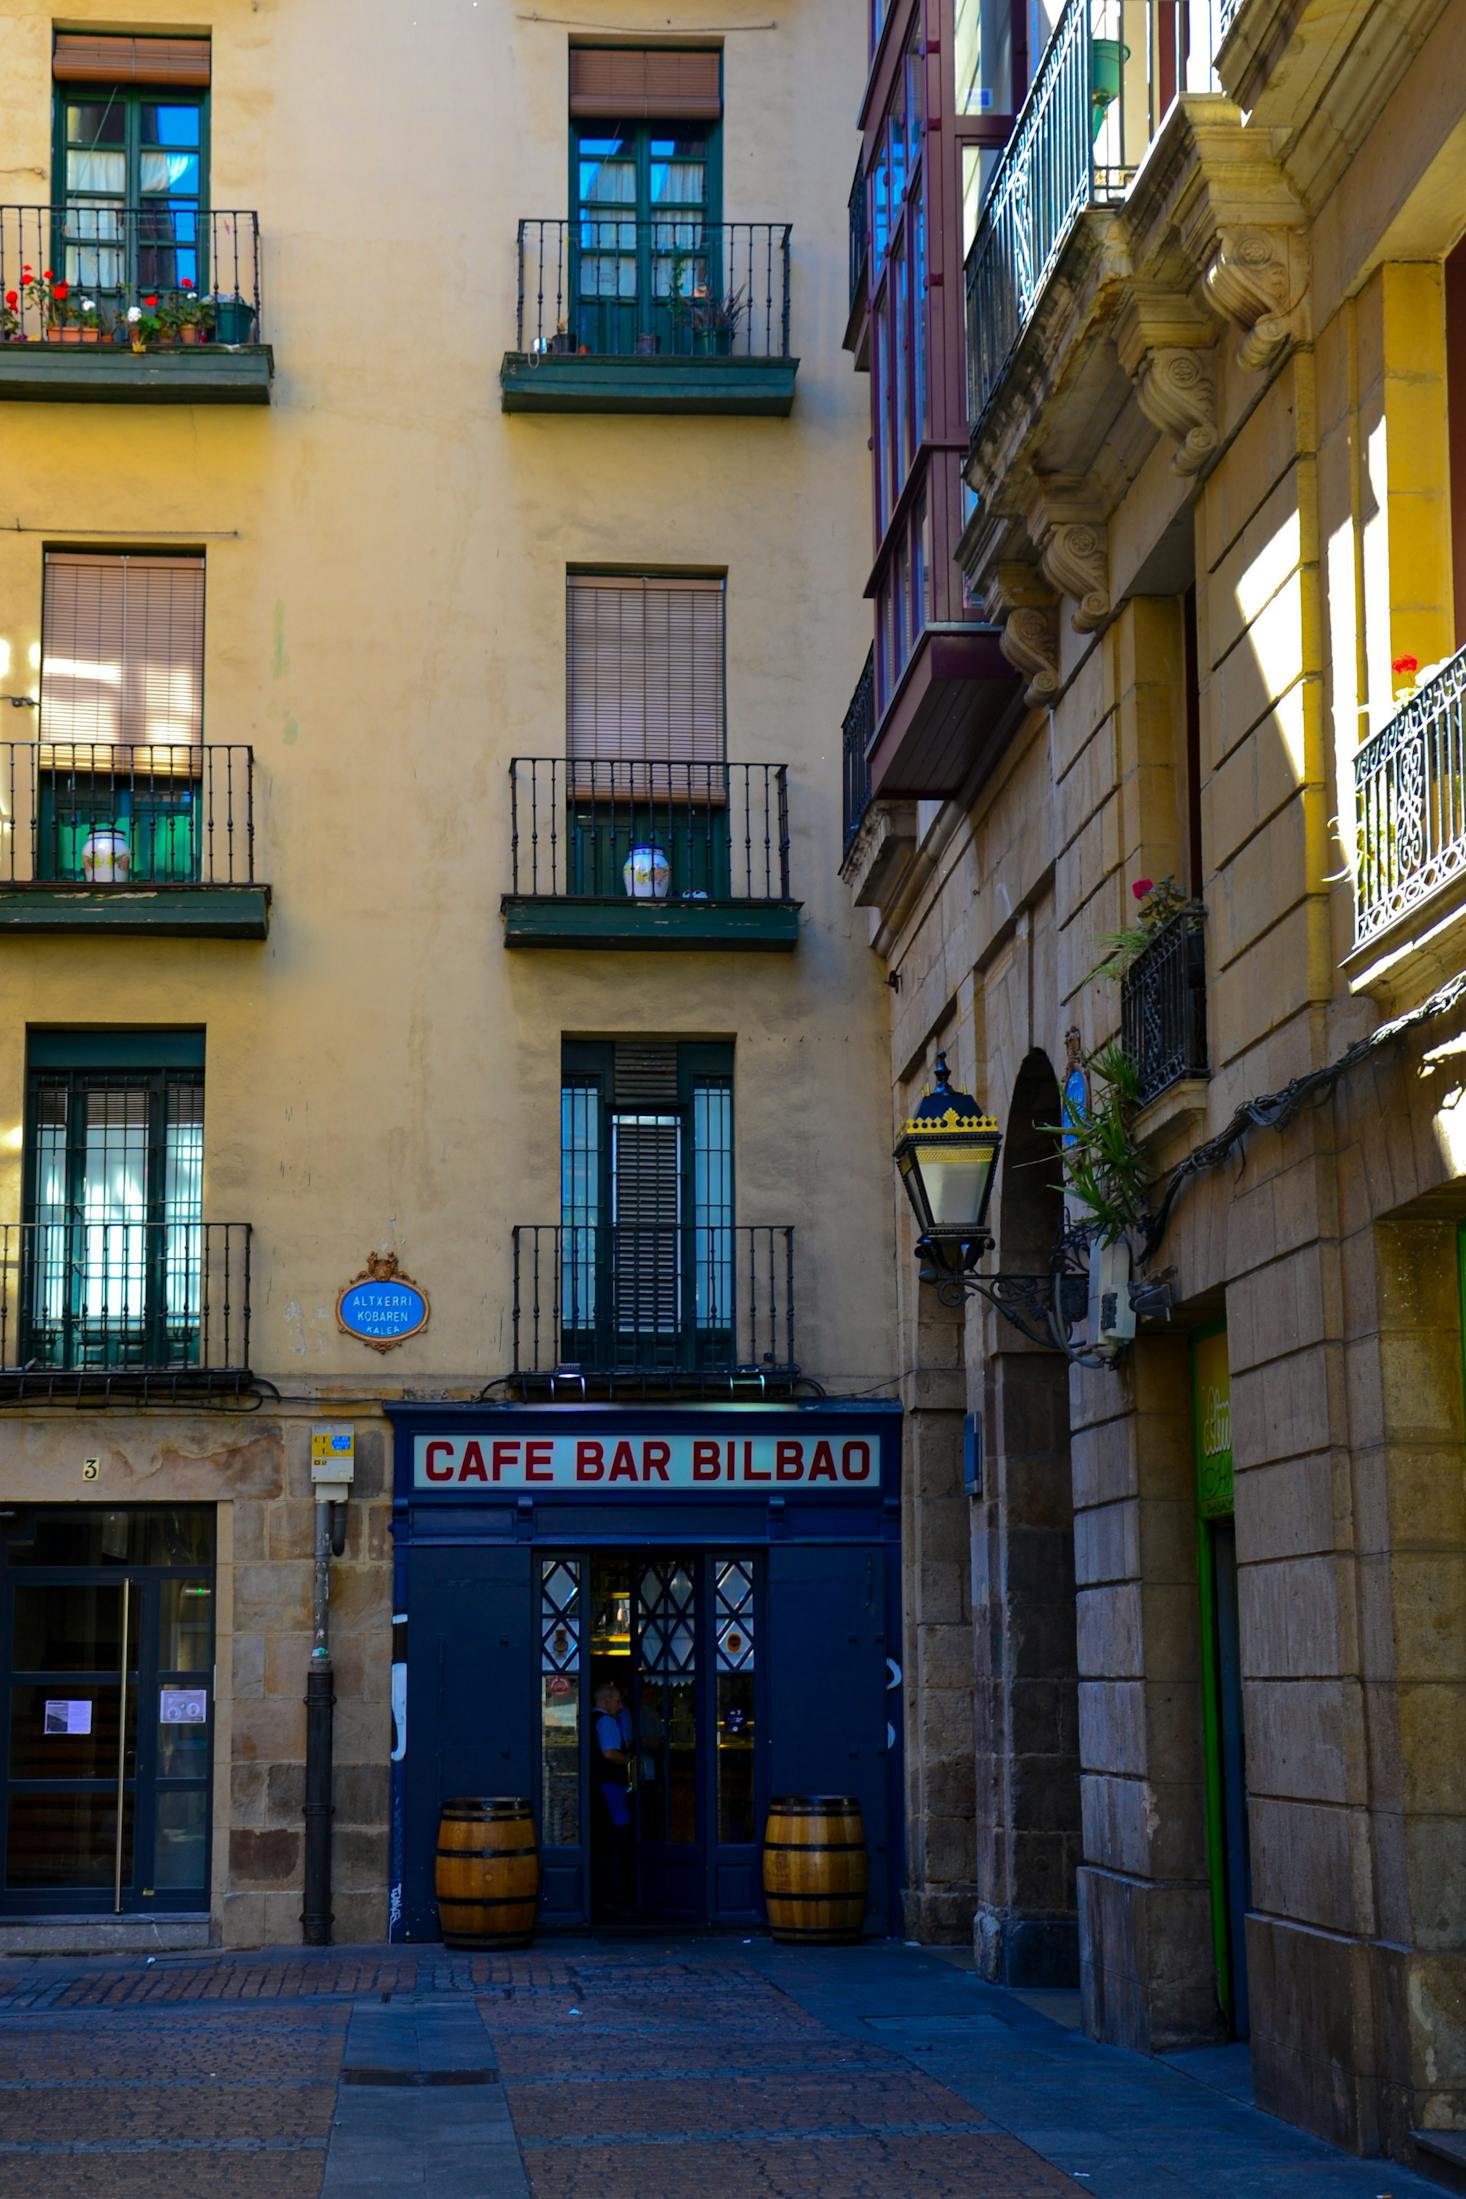 Best street food spots in Bilbao